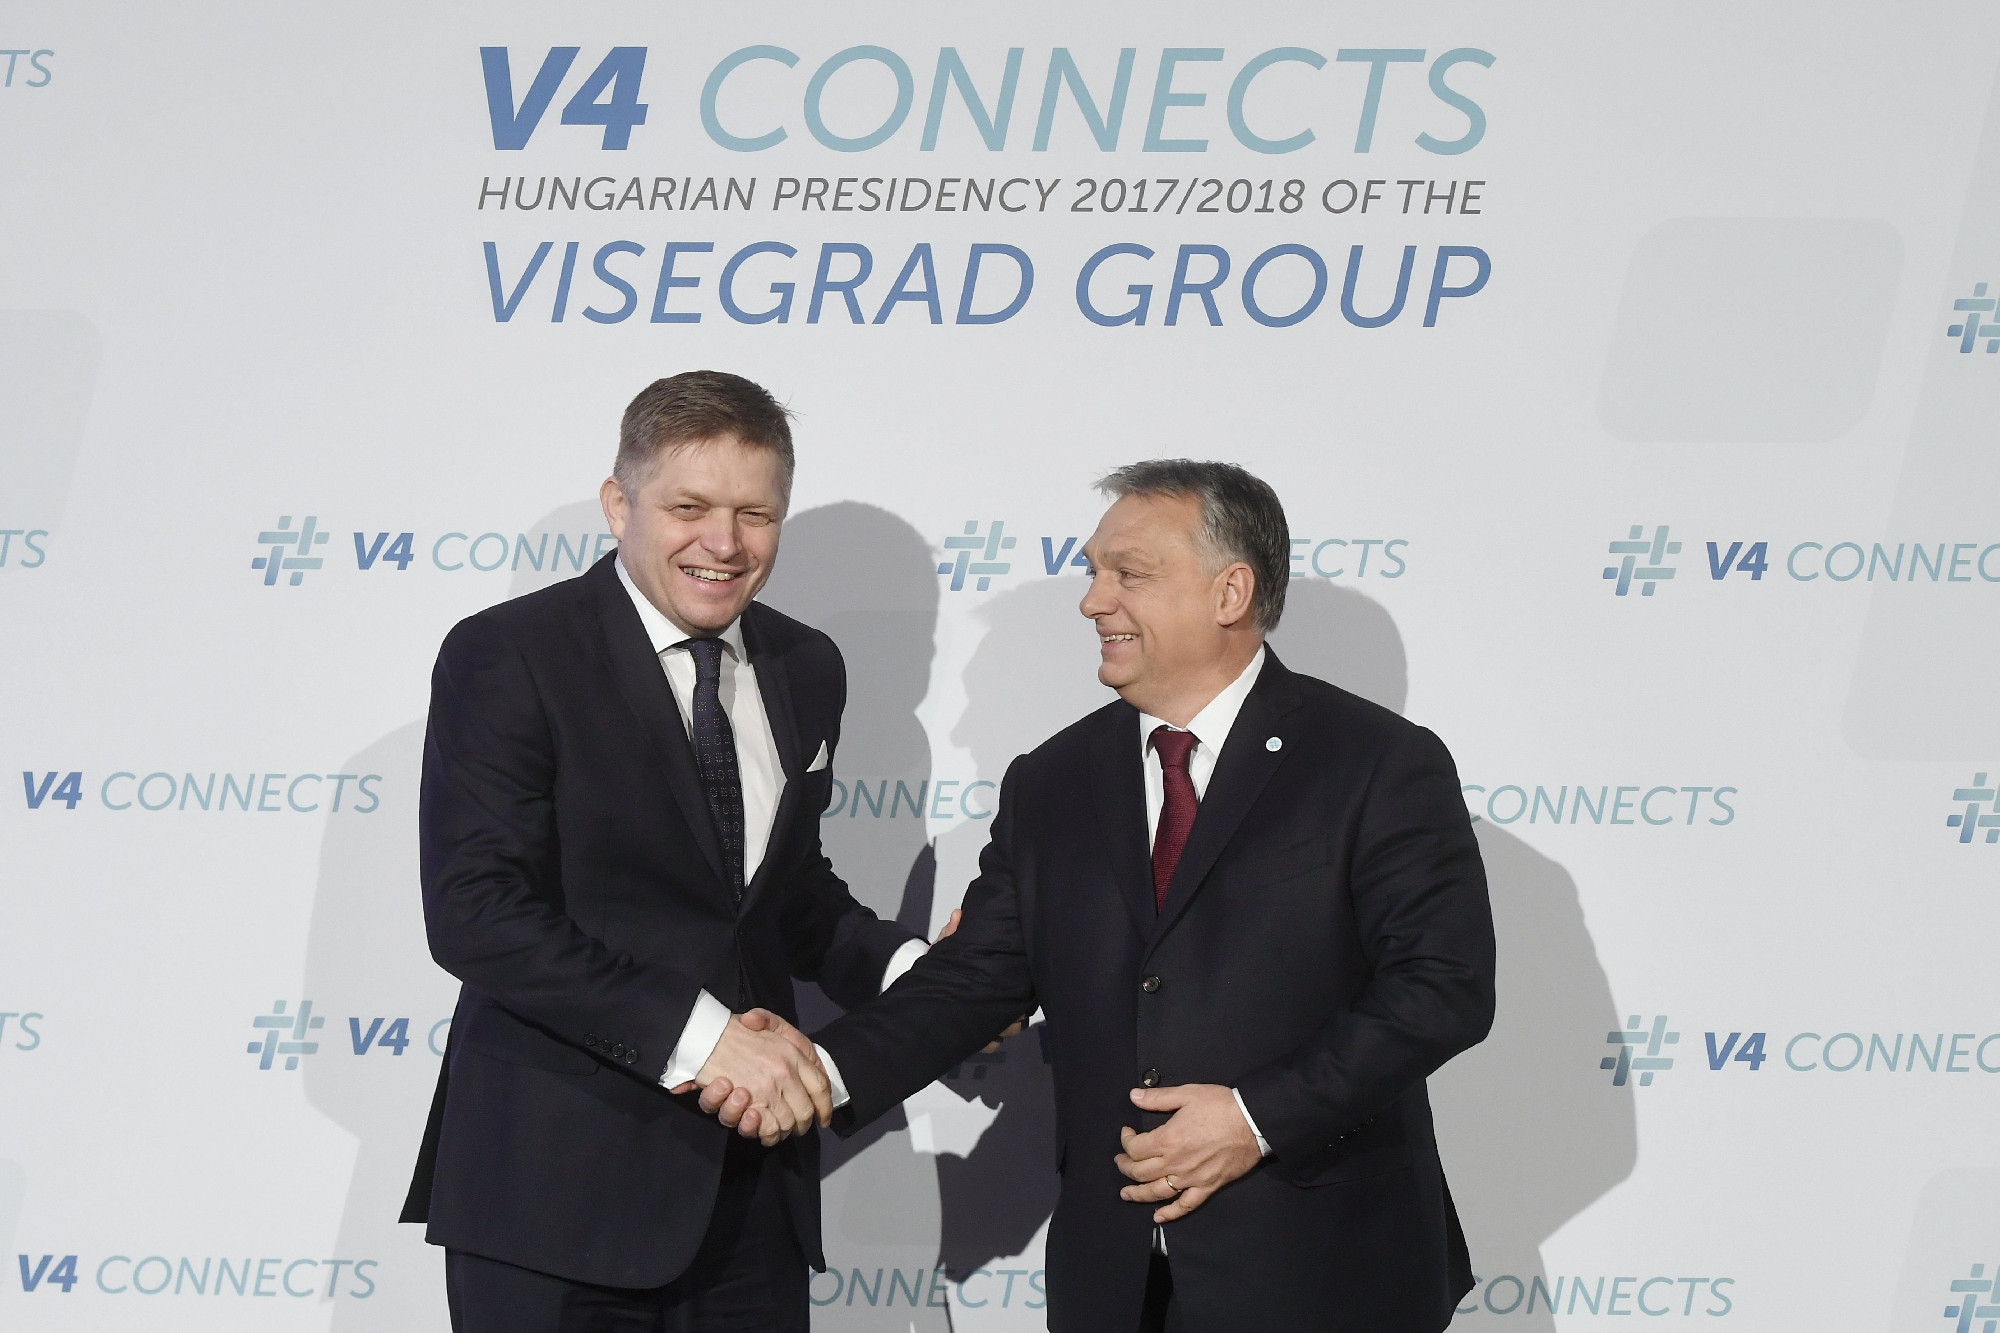 Szlovákia választott: Fico pártja nyert, a magyarok nem jutottak be